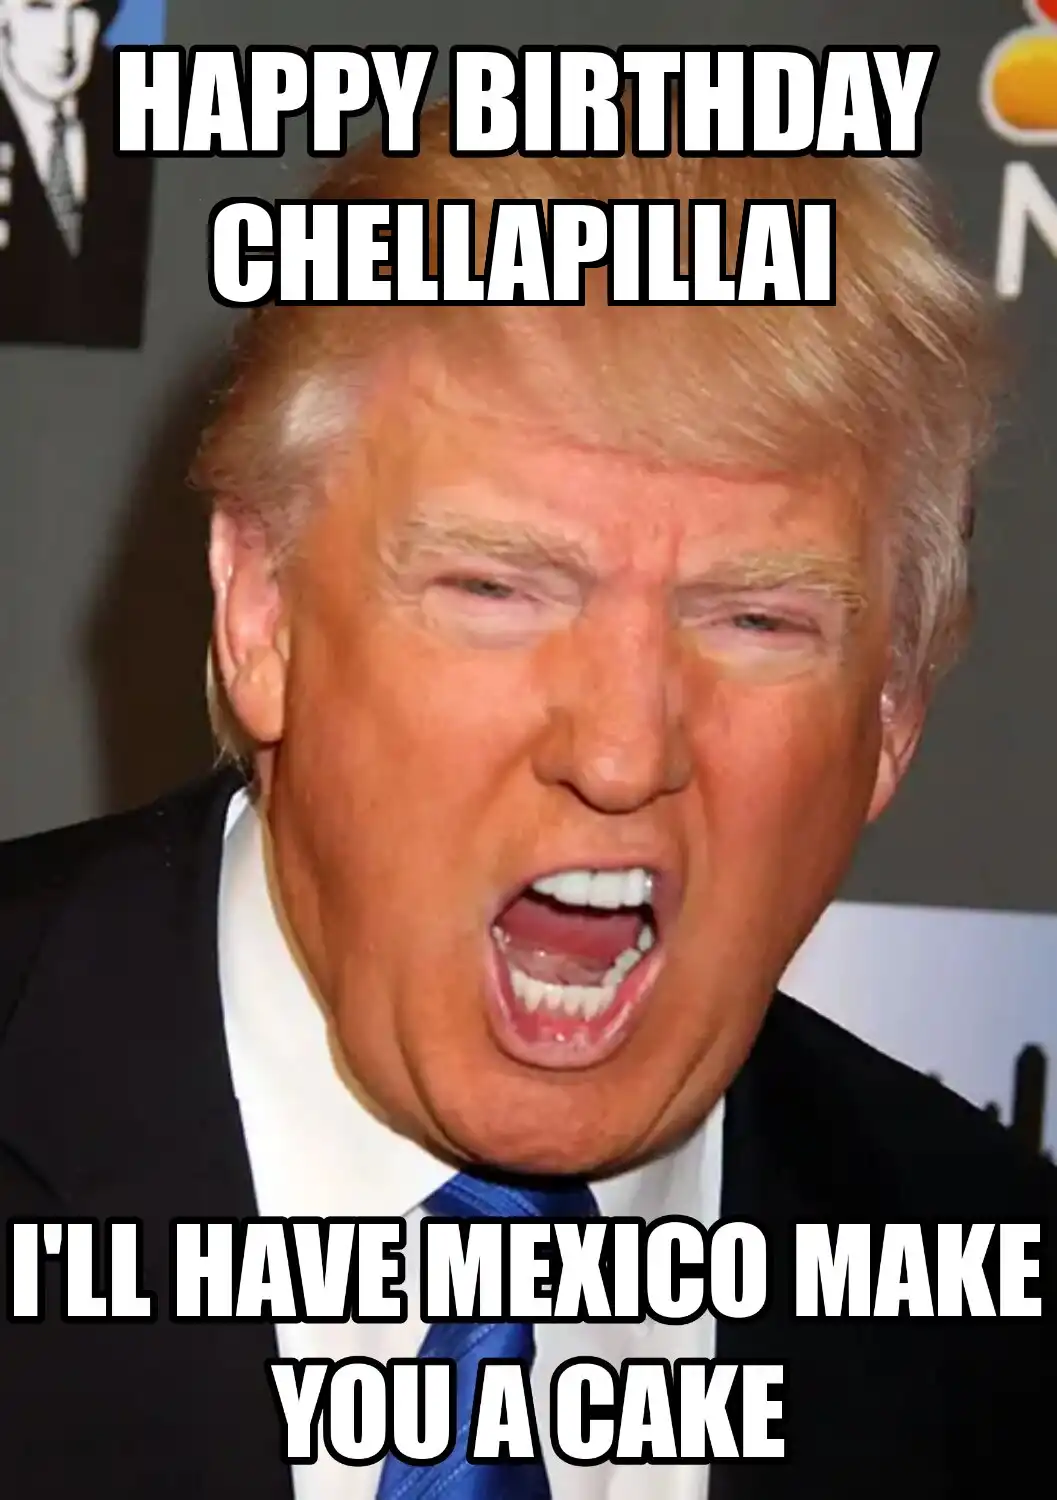 Happy Birthday Chellapillai Mexico Make You A Cake Meme